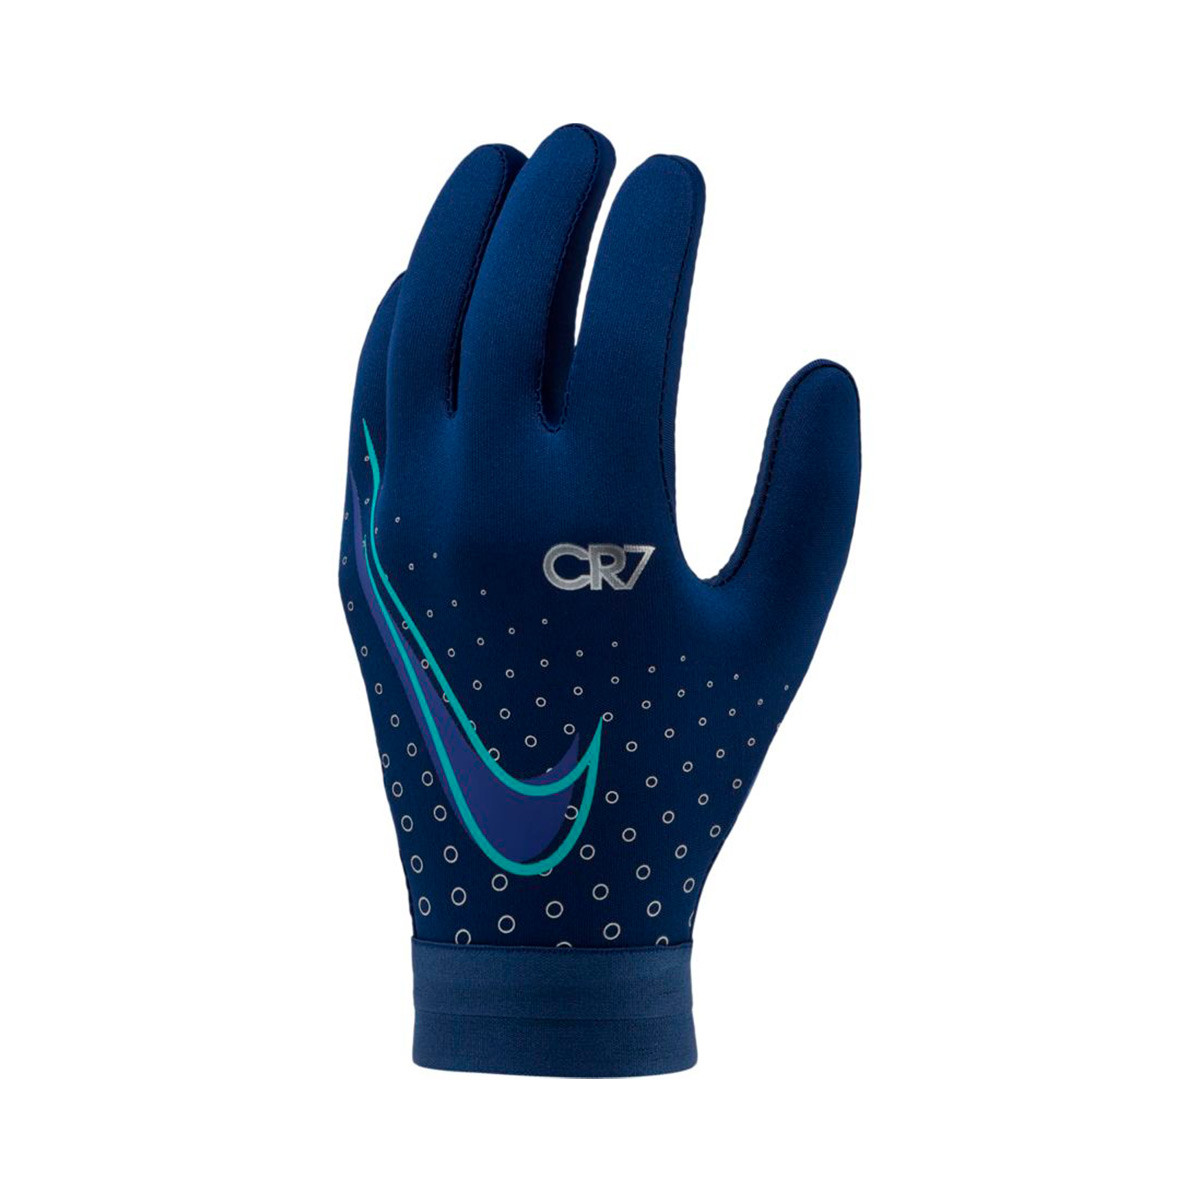 cr7 football gloves